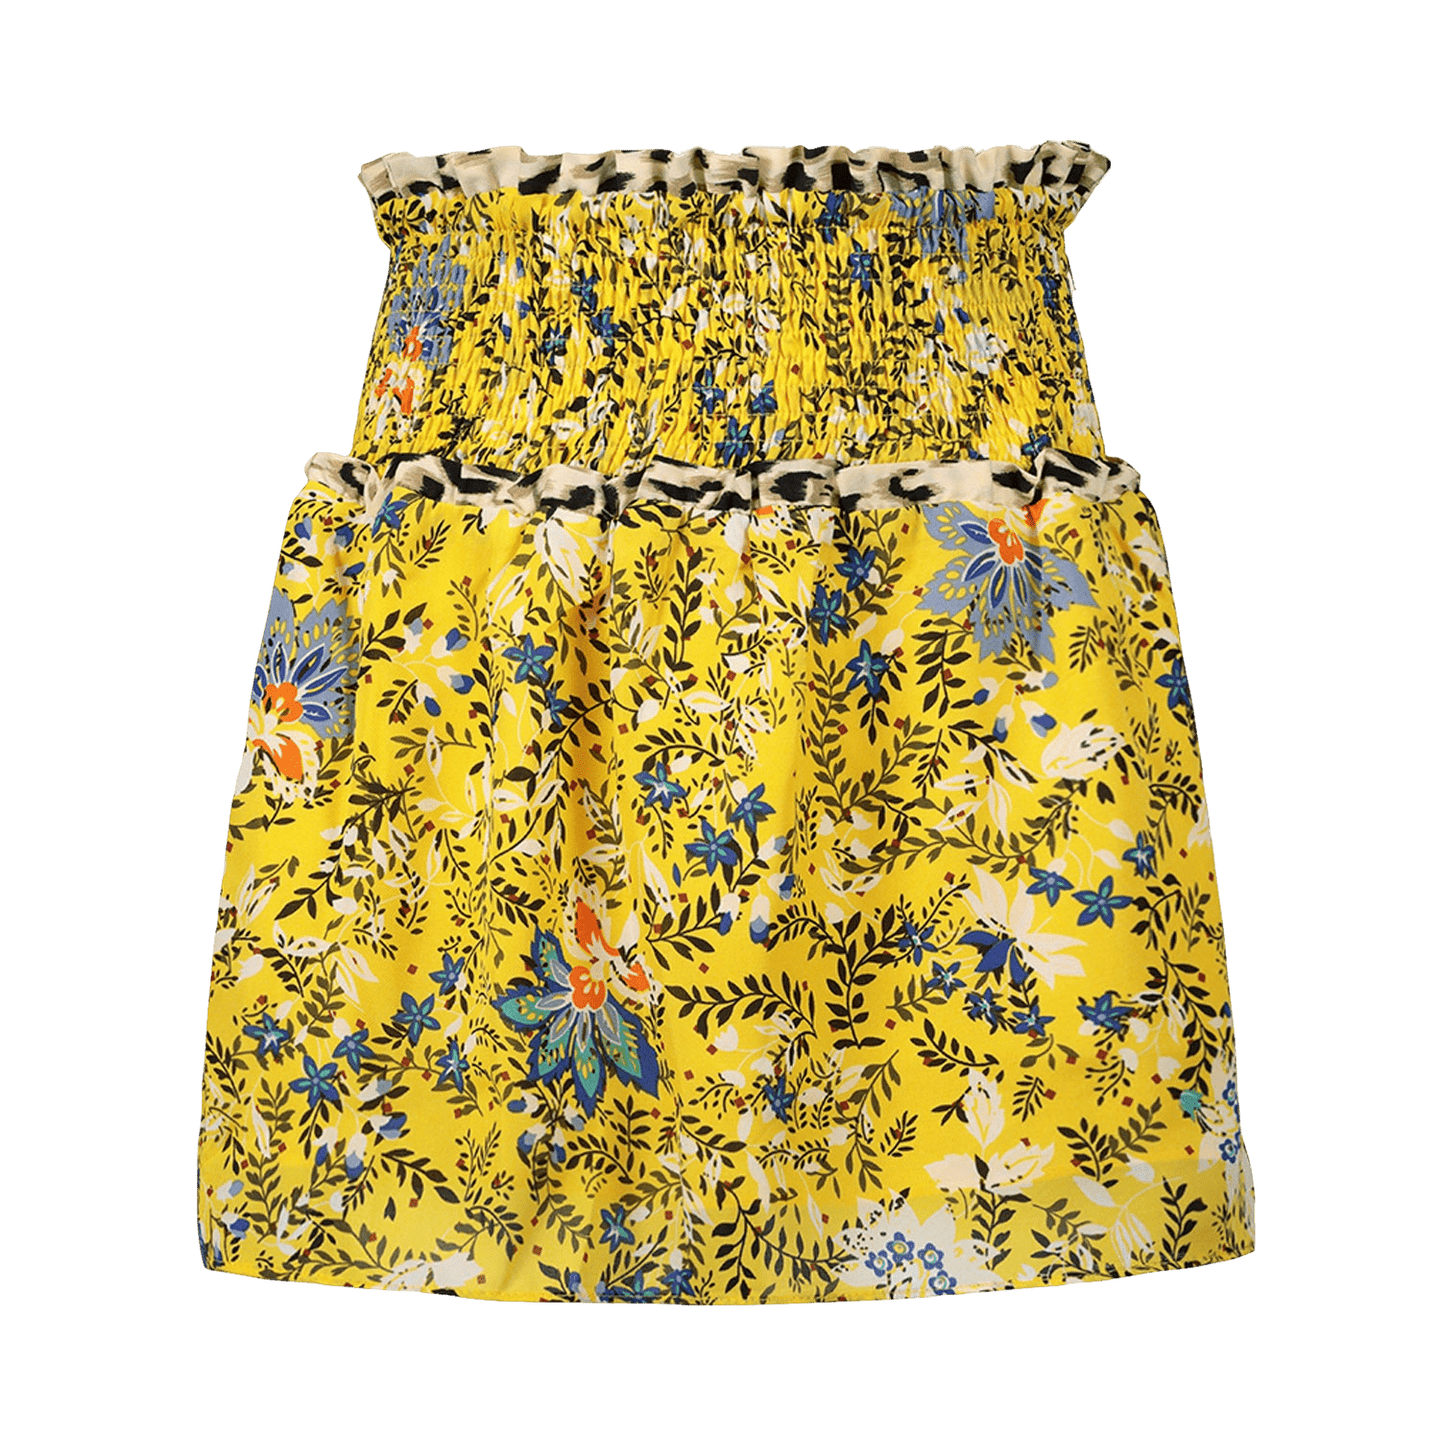 Jacky Girls Kids Girls Skirt Yellow